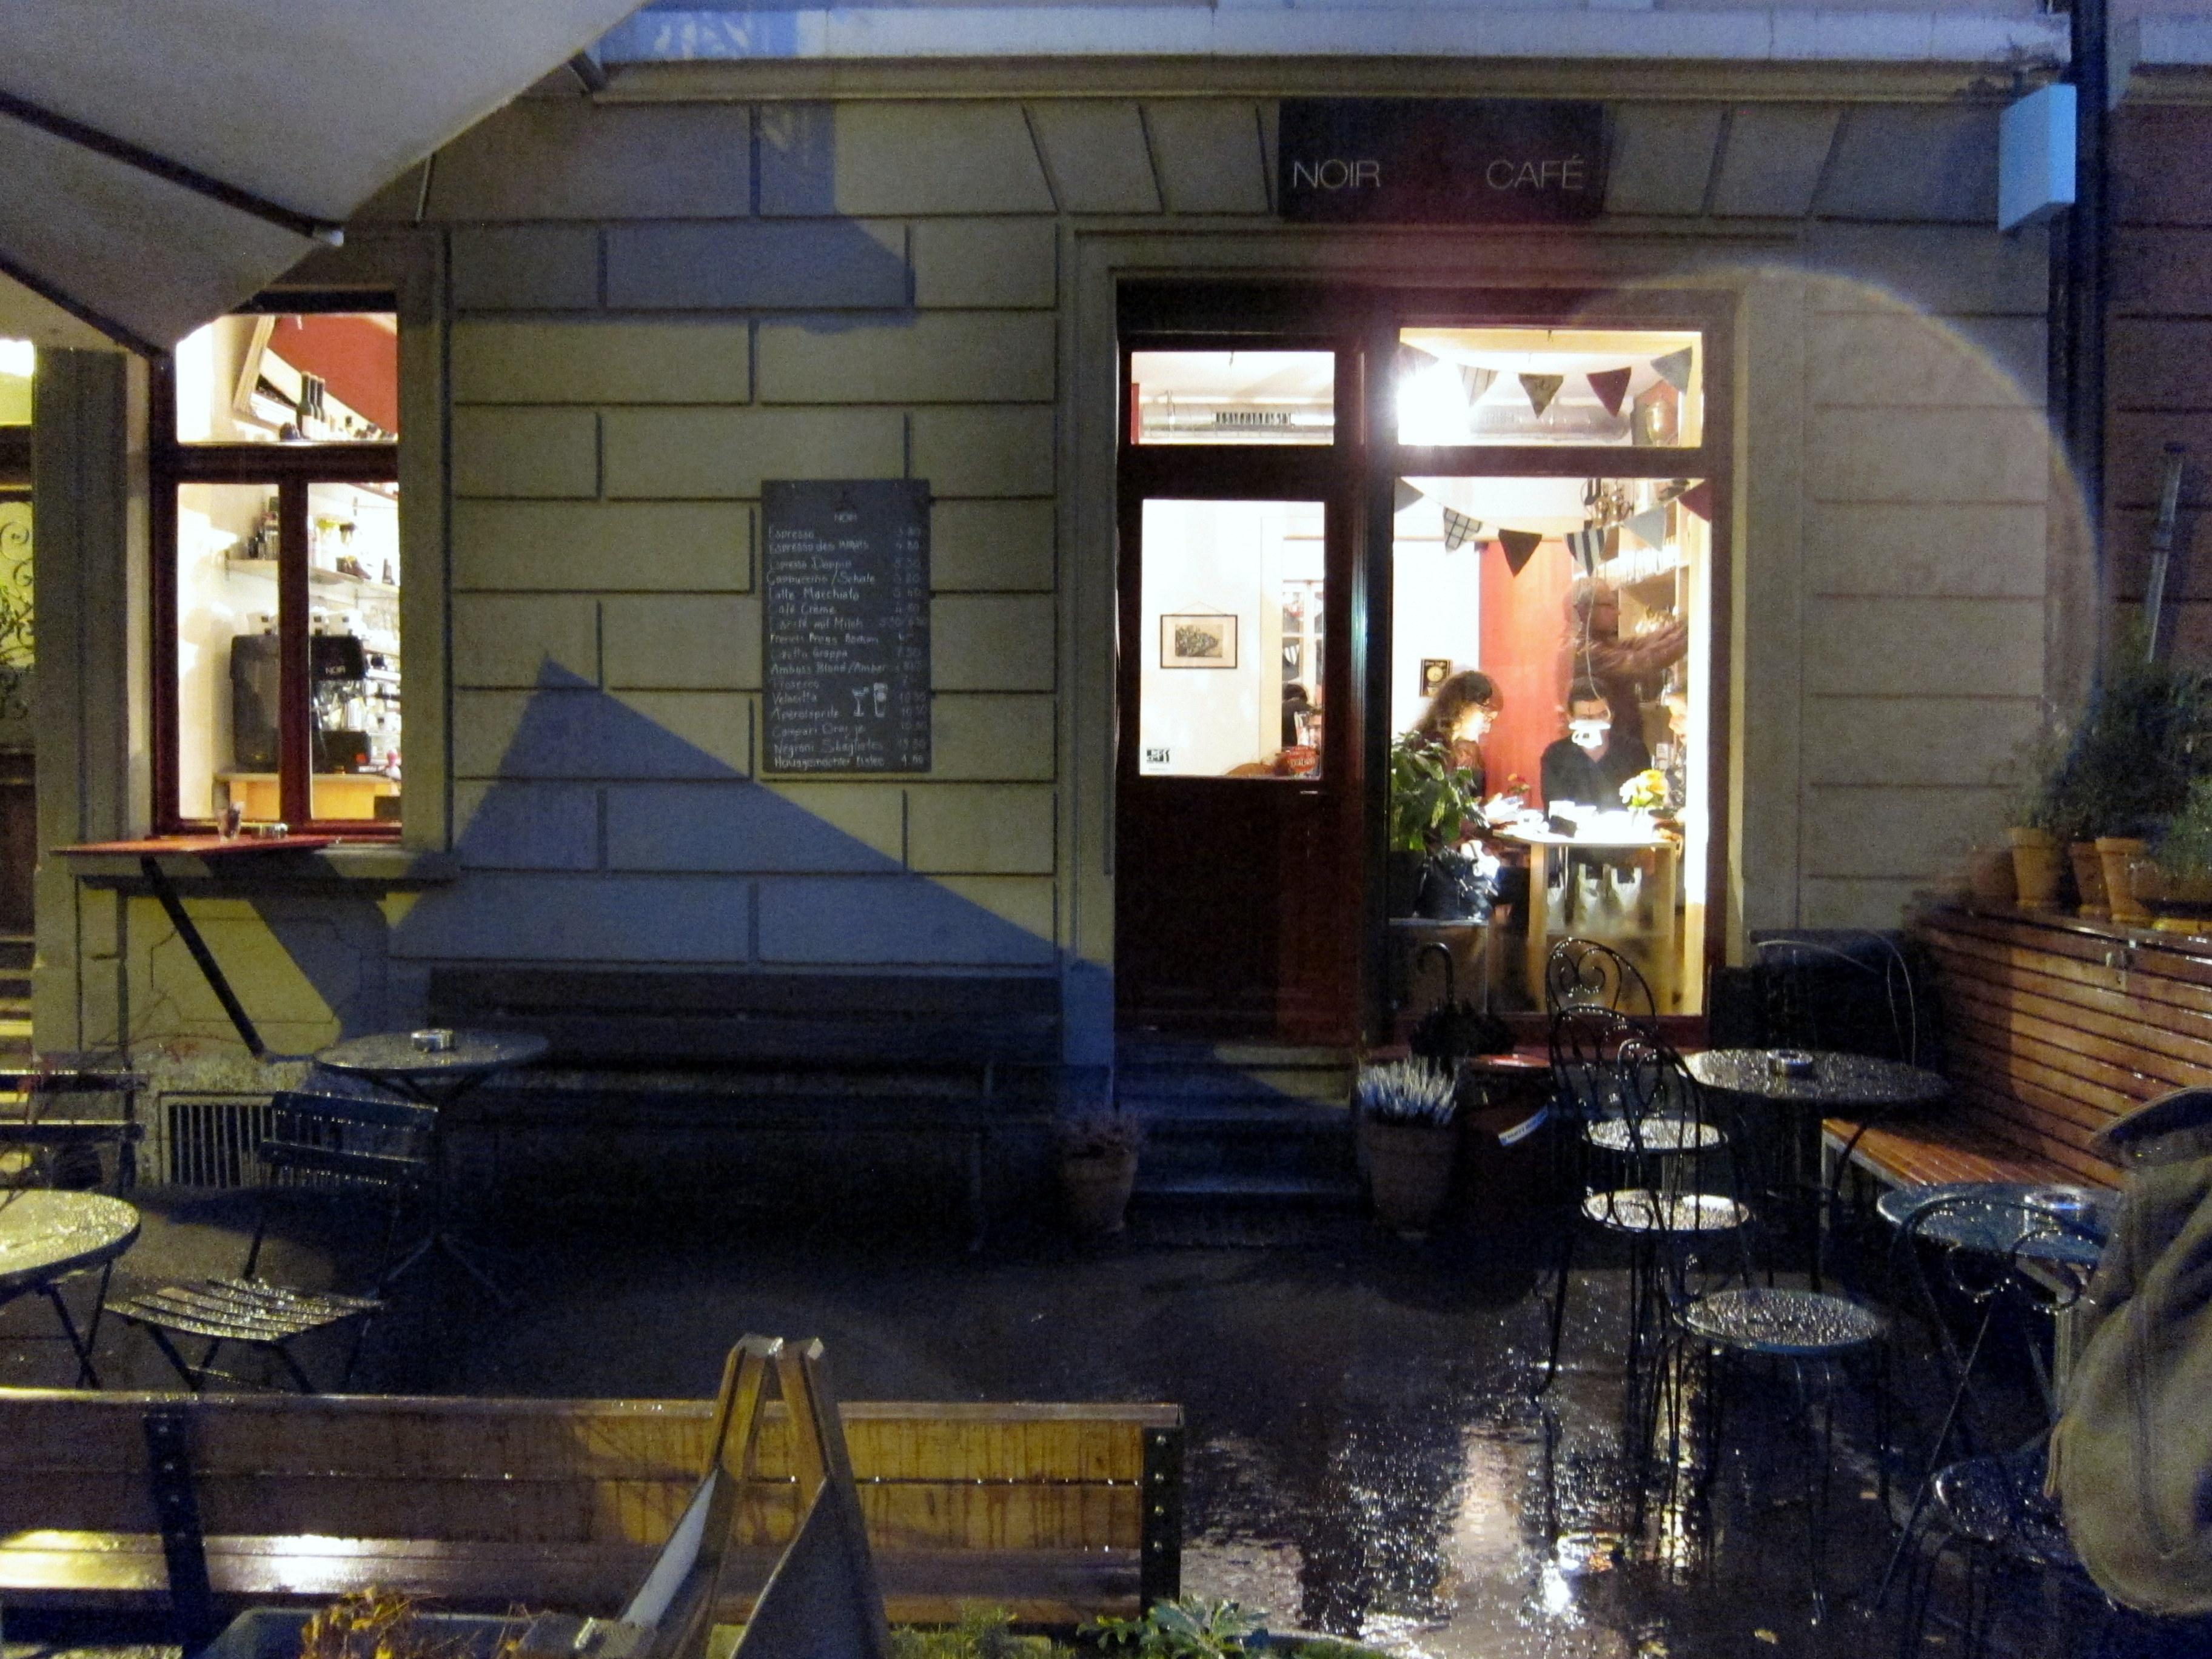 Cover image of this place Café Noir